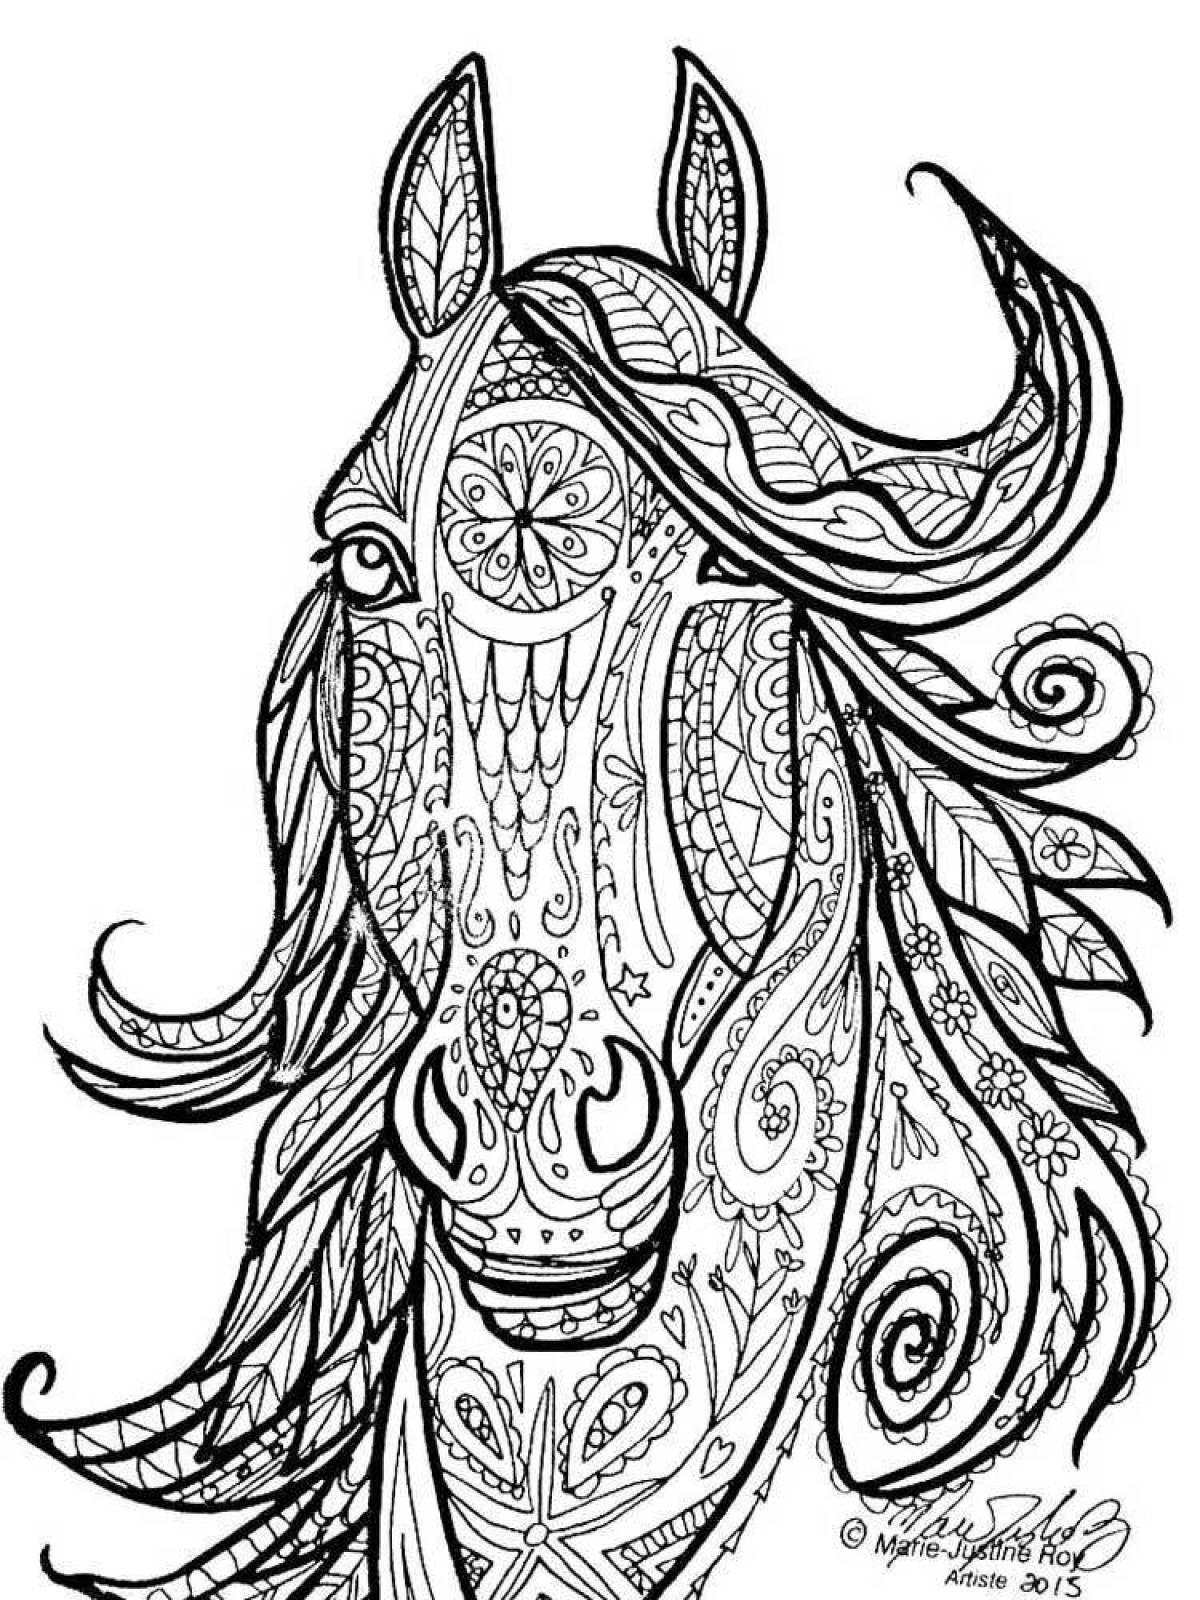 Превосходная раскраска сложная лошадь